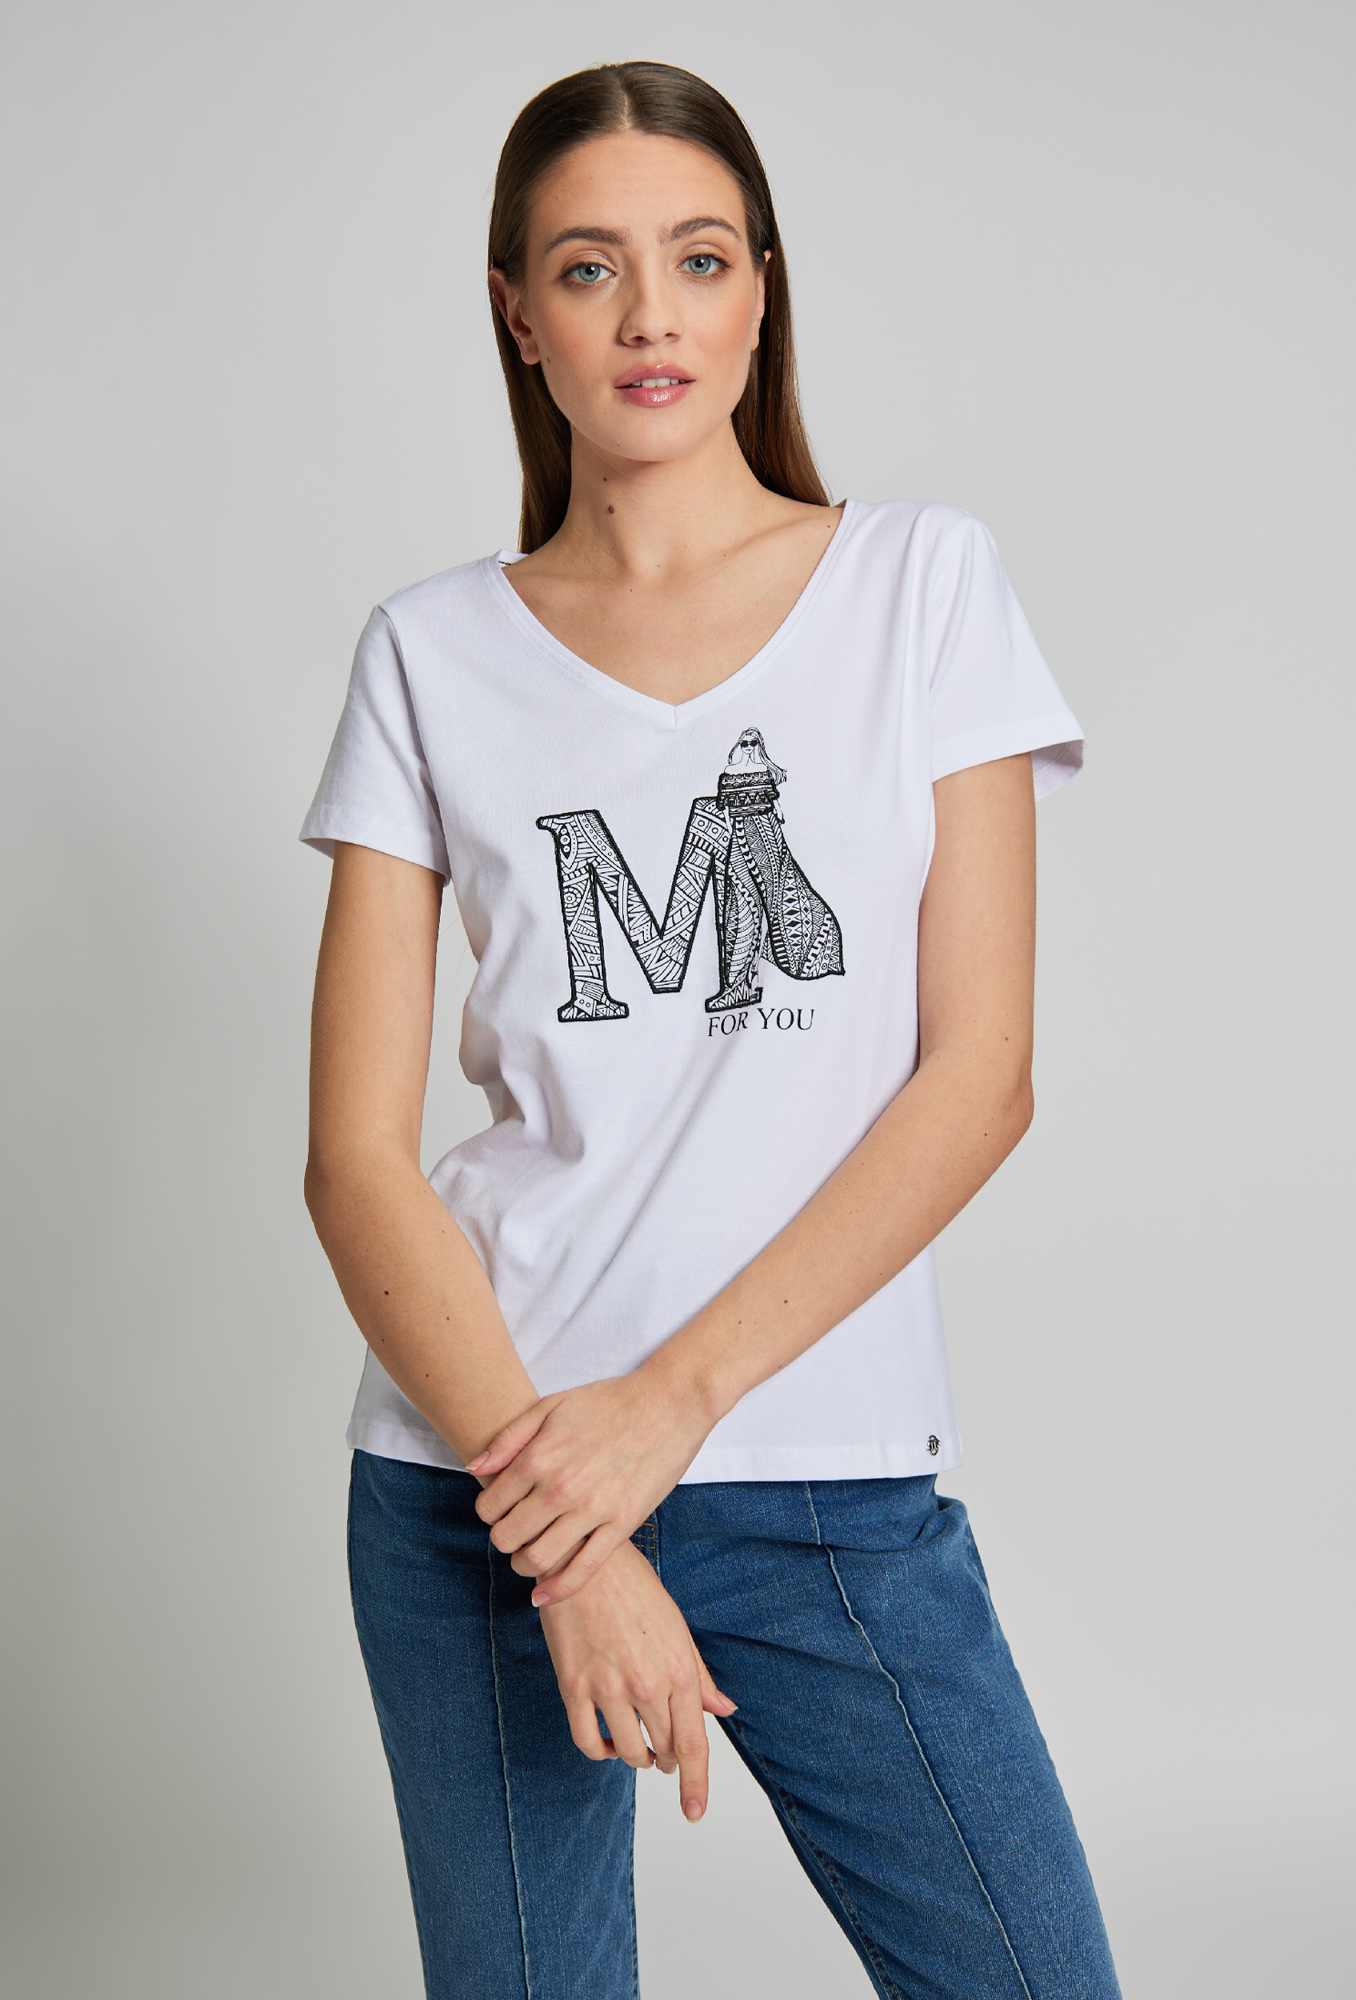 MONNARI Woman's T-Shirts T-Shirt With Print